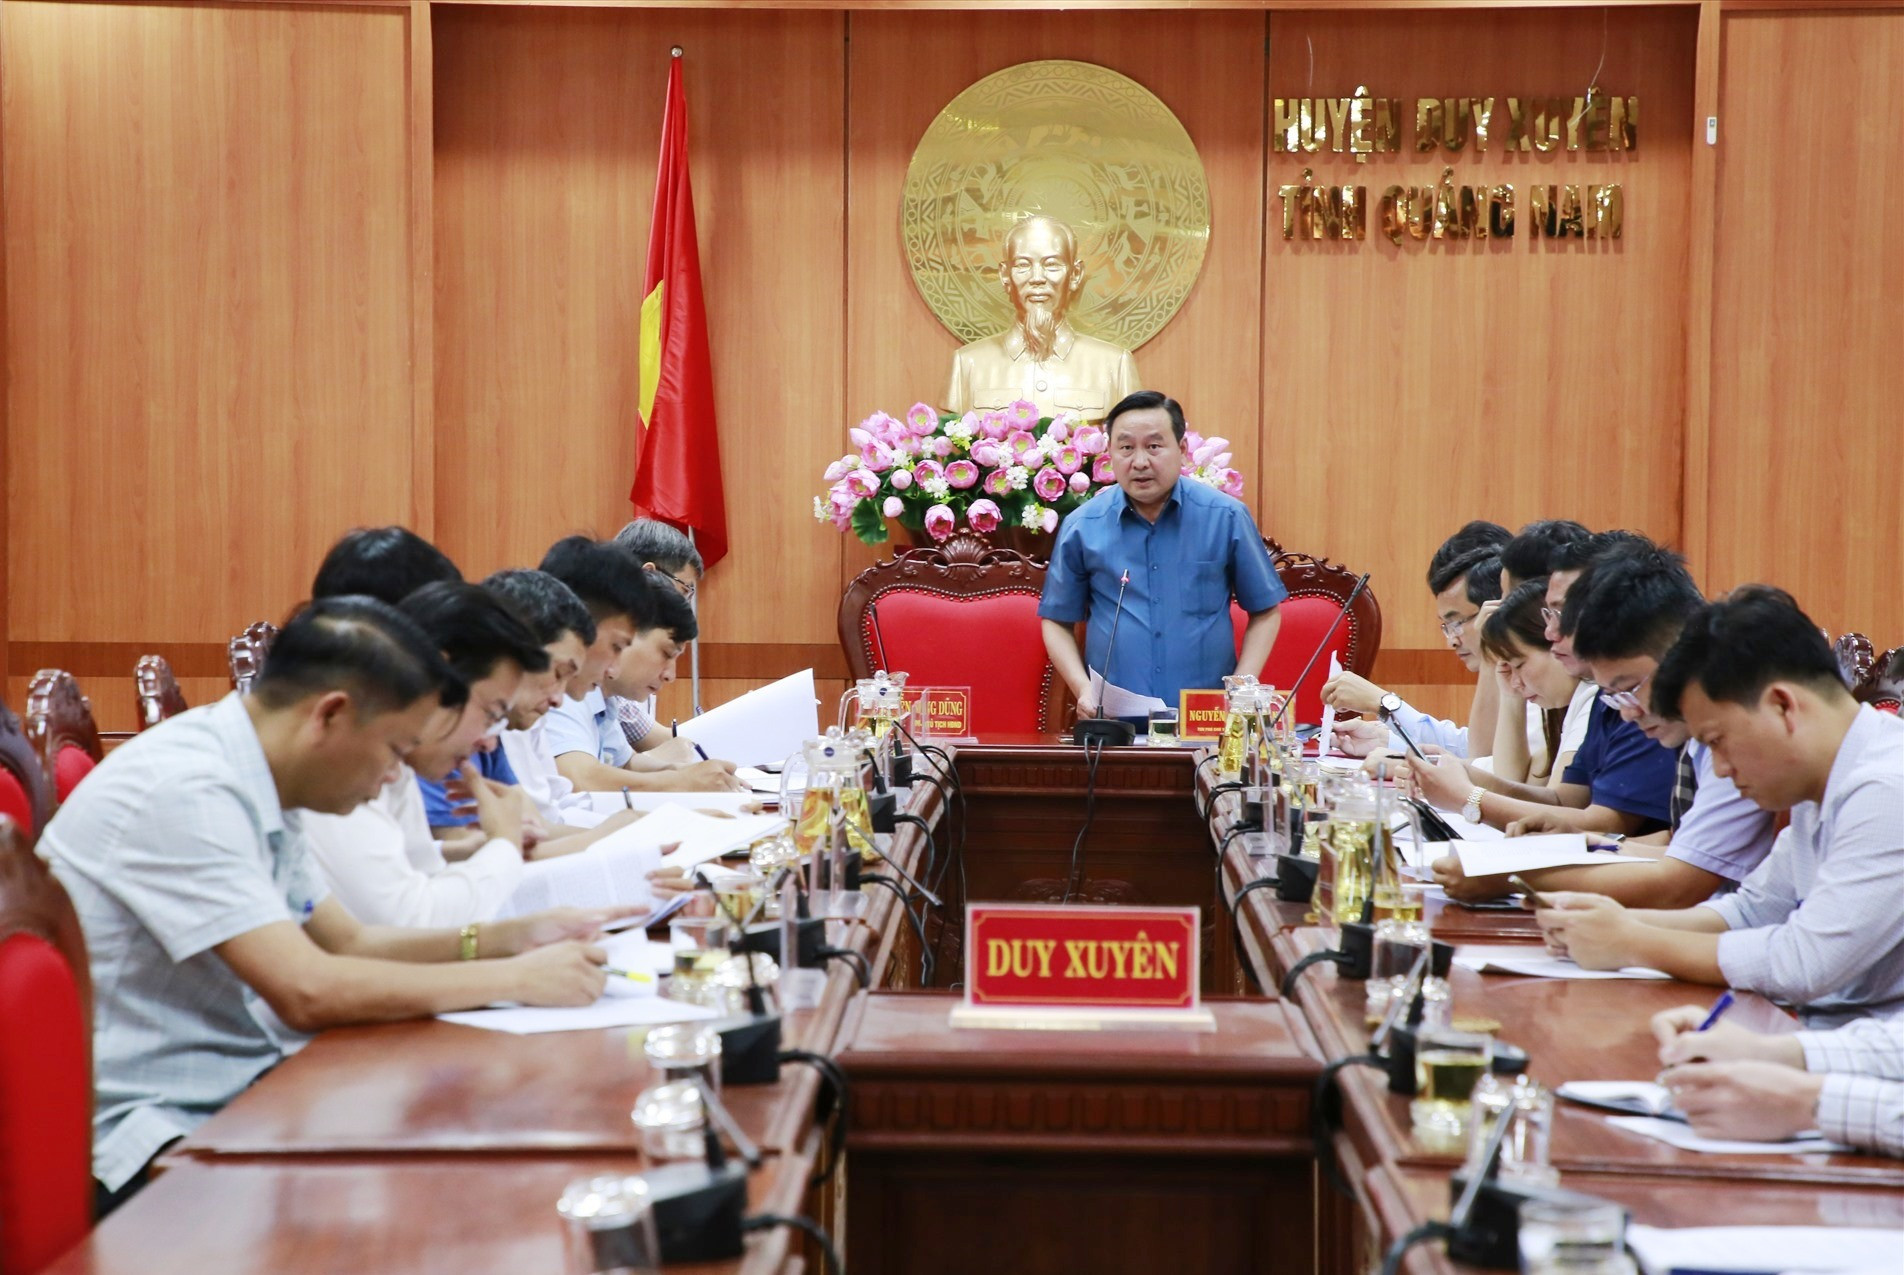 Phó Chủ tịch HĐND tỉnh Nguyễn Công Thanh cùng đoàn giám sát làm việc với UBND huyện Duy Xuyên. Ảnh: T.C